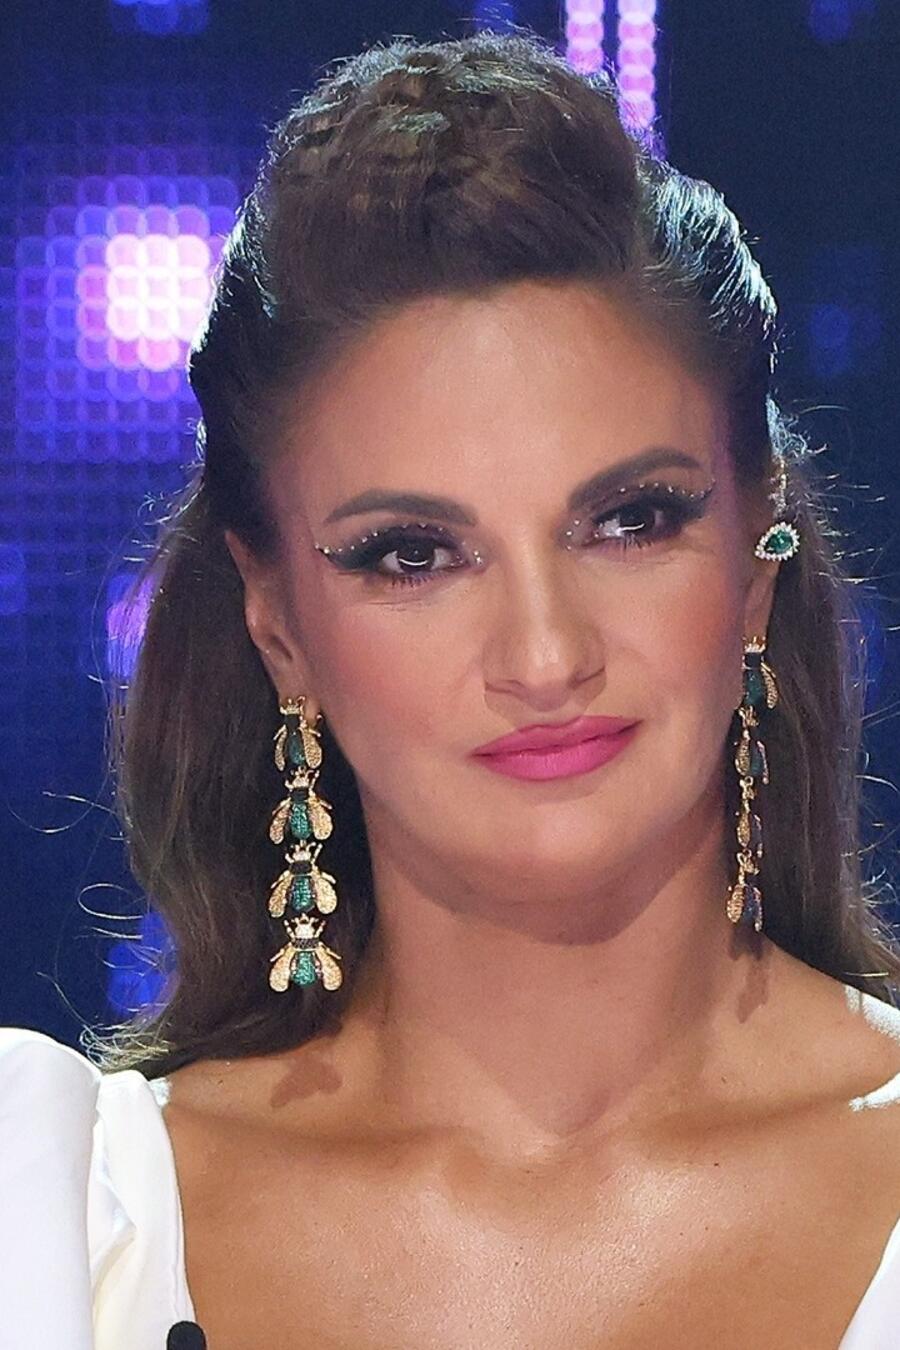 La cantante y bailarina Mariana Seoane participa en programa de televisión.